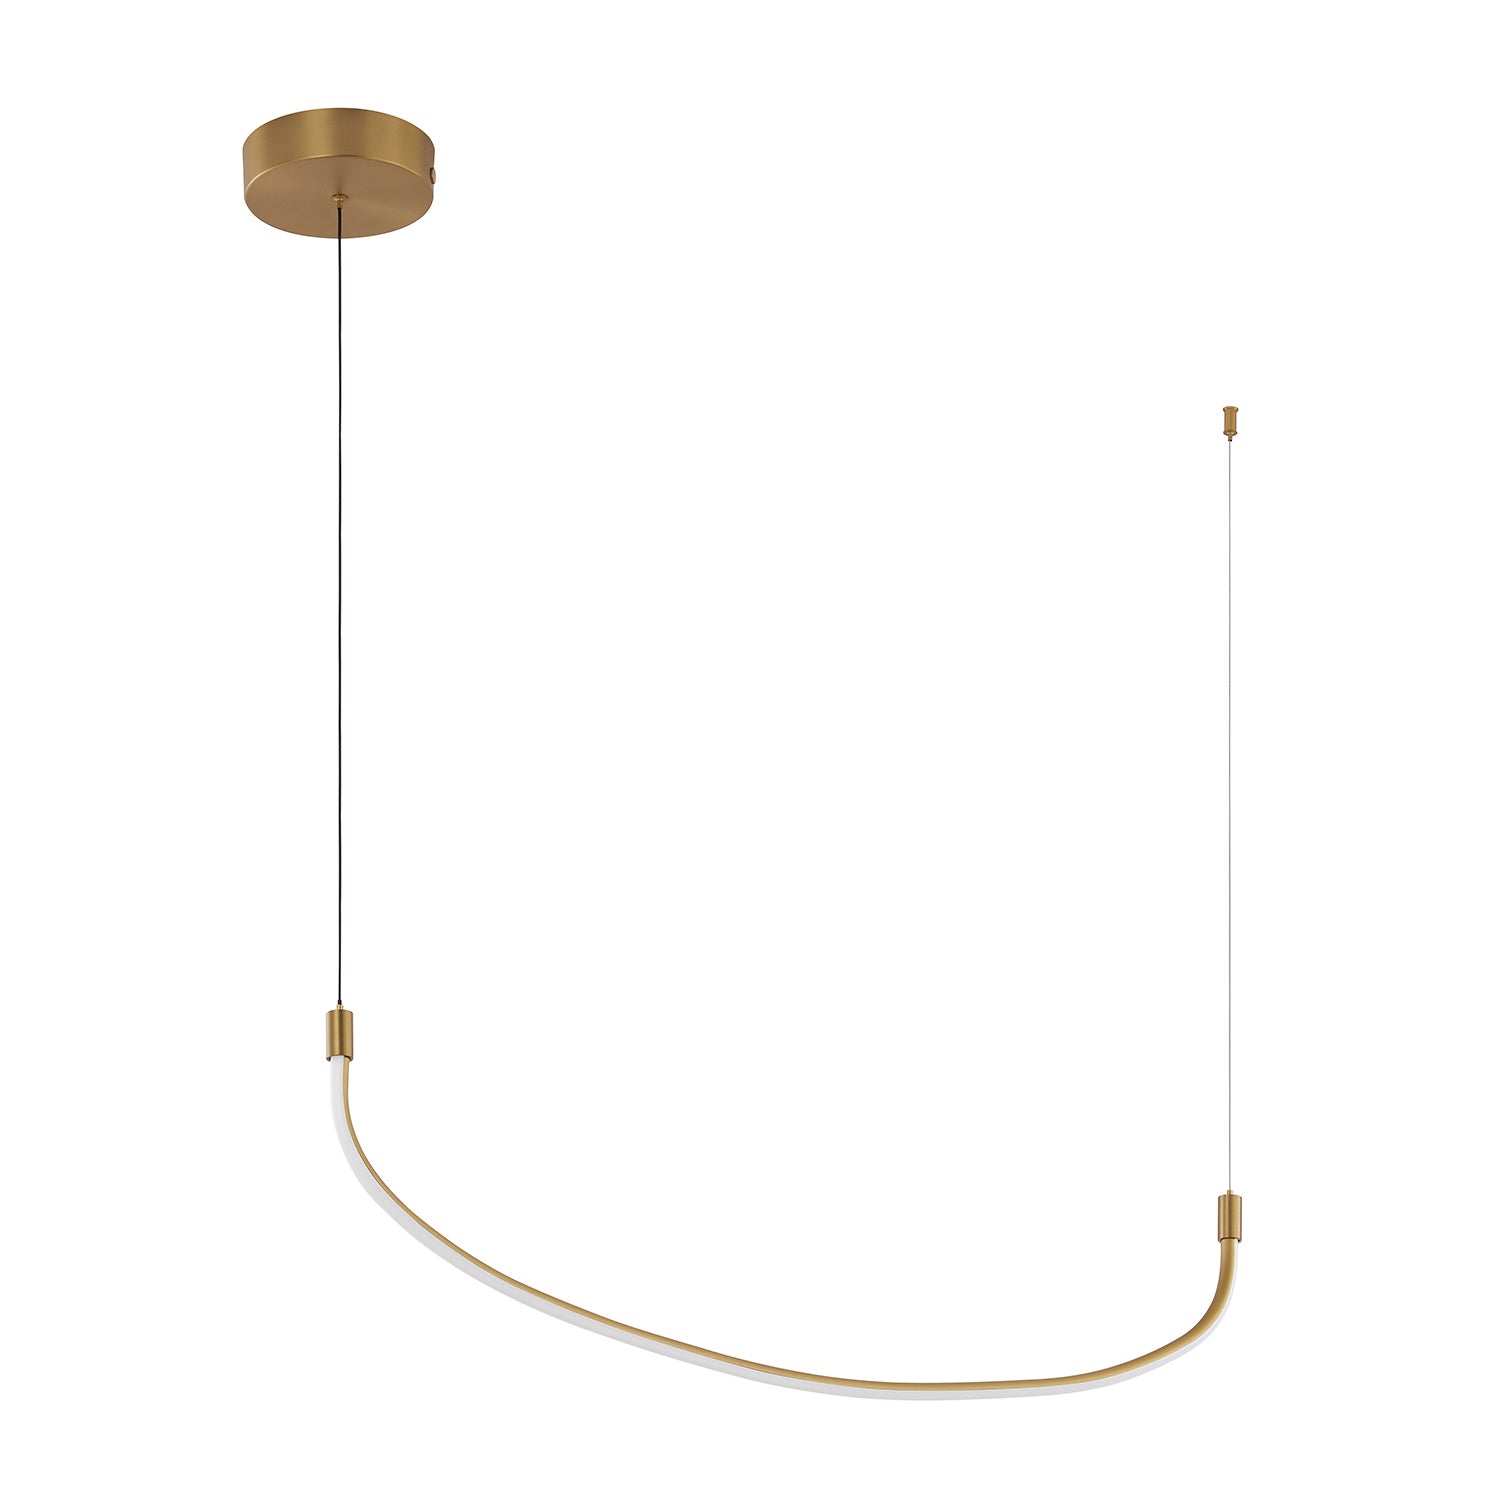 Kuzco Lighting - LP89036-BG - LED Pendant - Talis - Brushed Gold